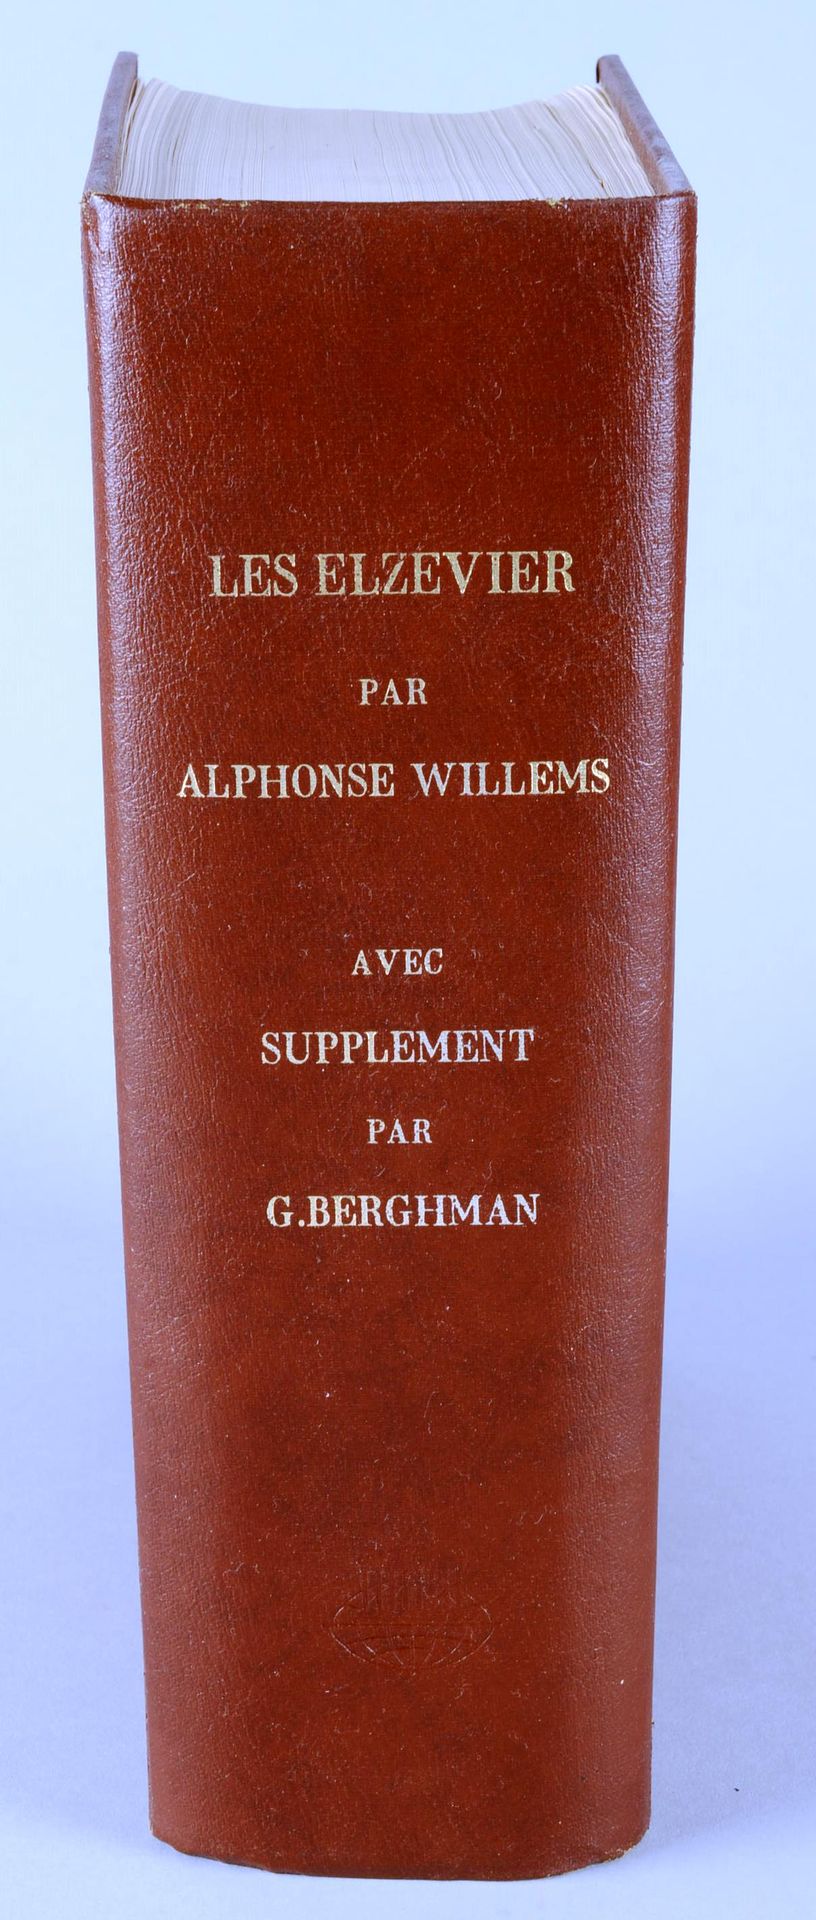 WILLEMS Alphonse WILLEMS Alphonse



Les Elzevier - Geschichte und typografische&hellip;